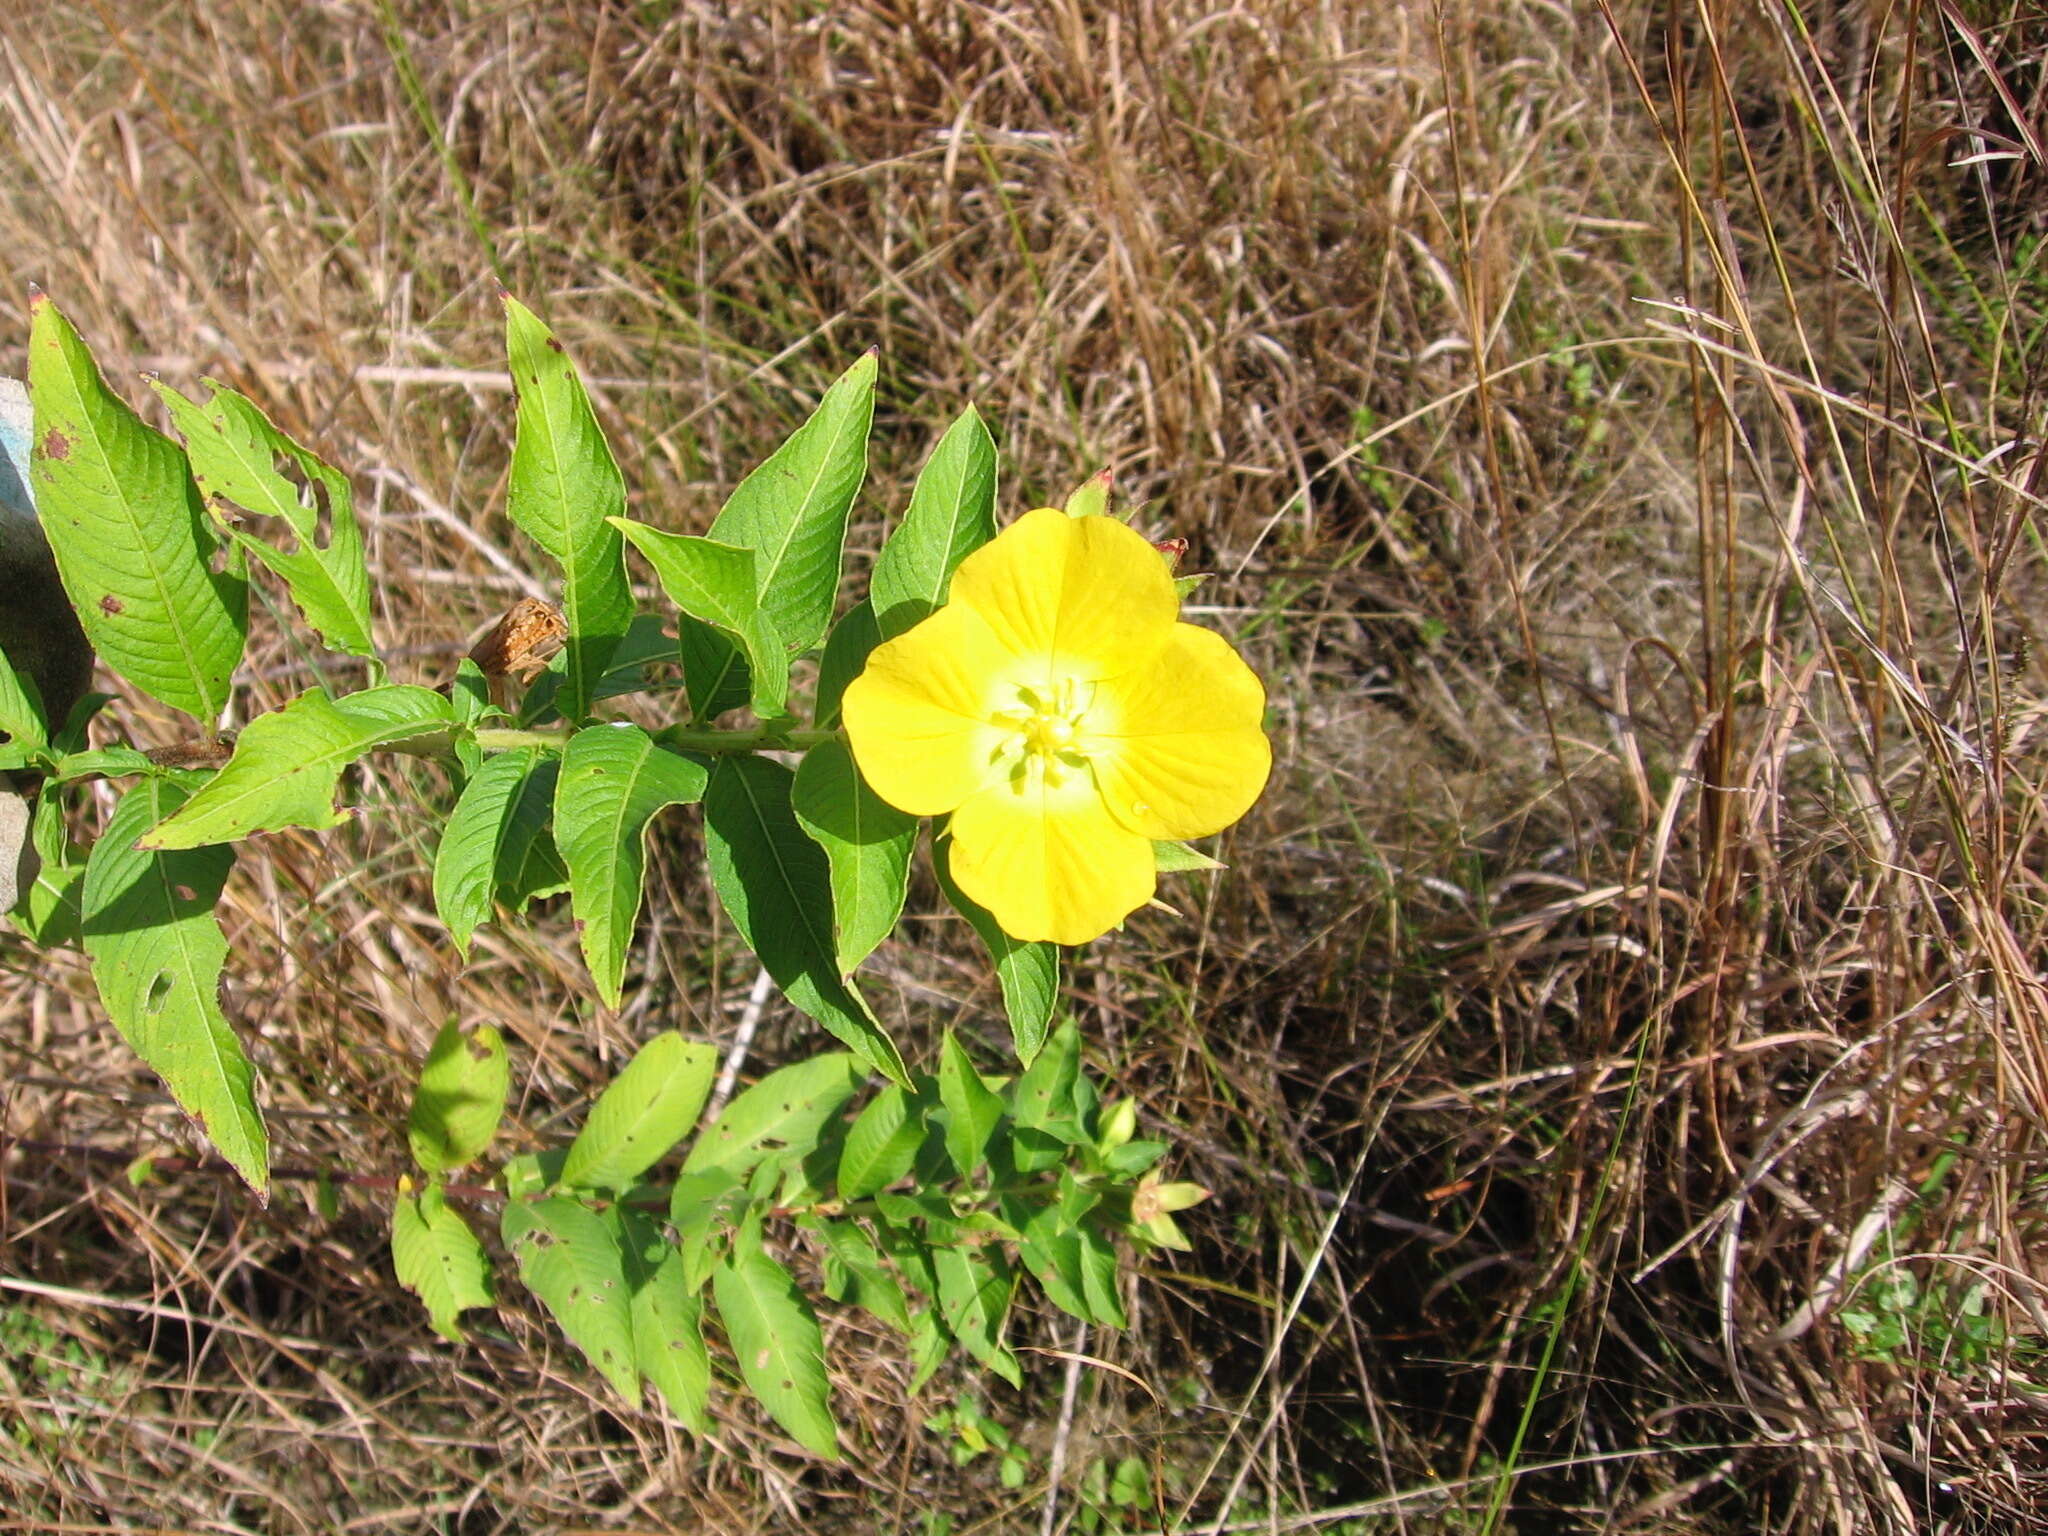 Image of Peruvian primrose-willow